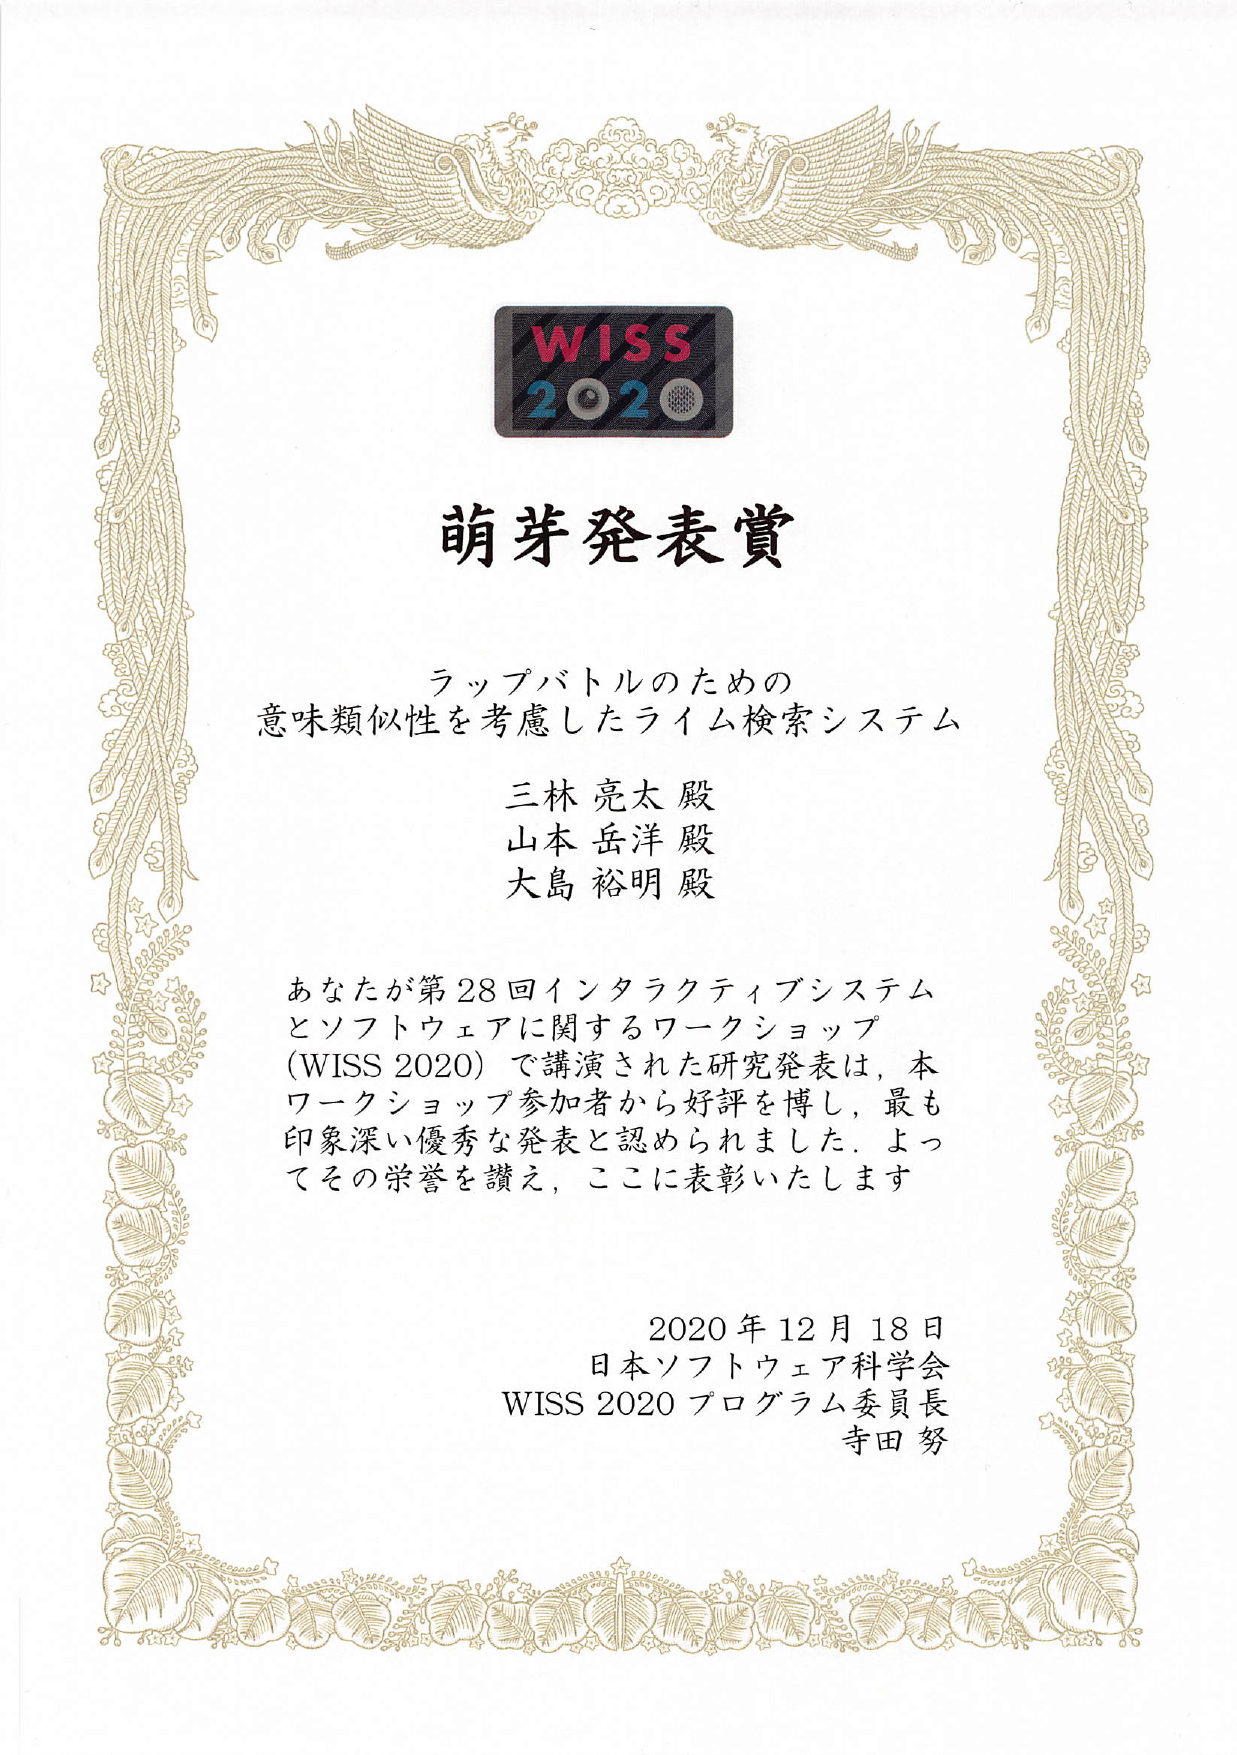 賞：WISS2020 萌芽発表賞